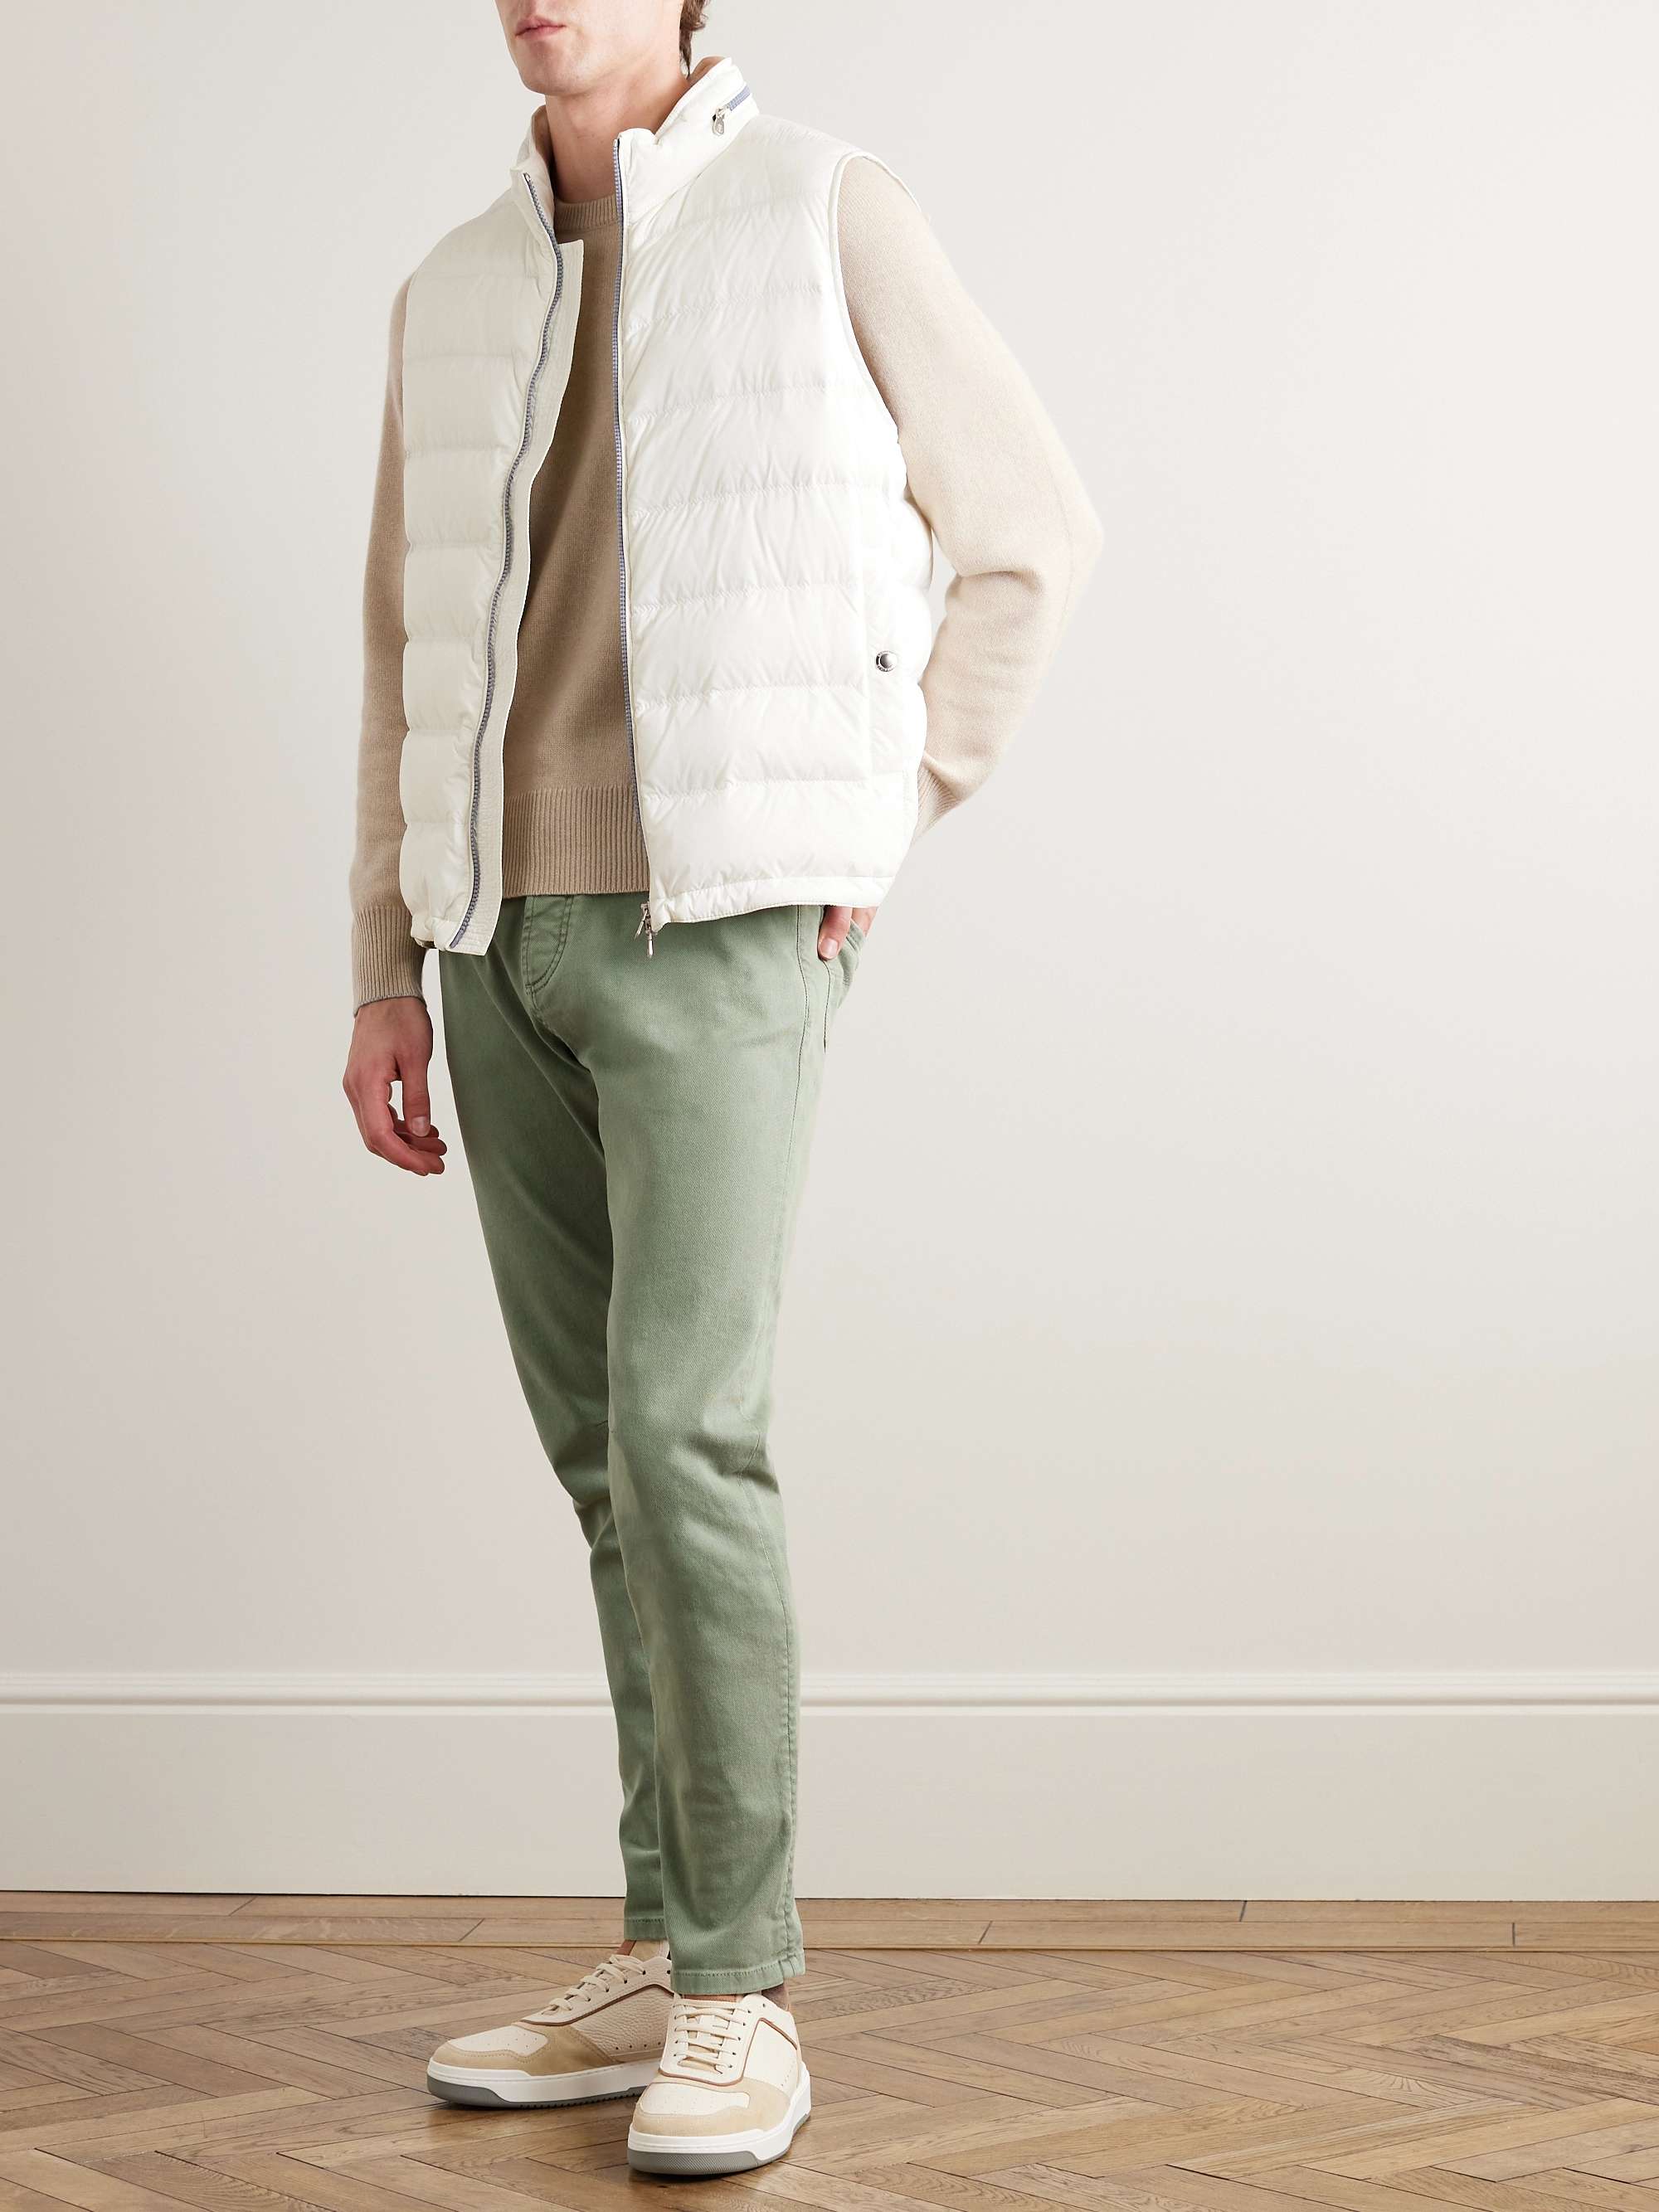 BRUNELLO CUCINELLI Cashmere Sweater for Men | MR PORTER